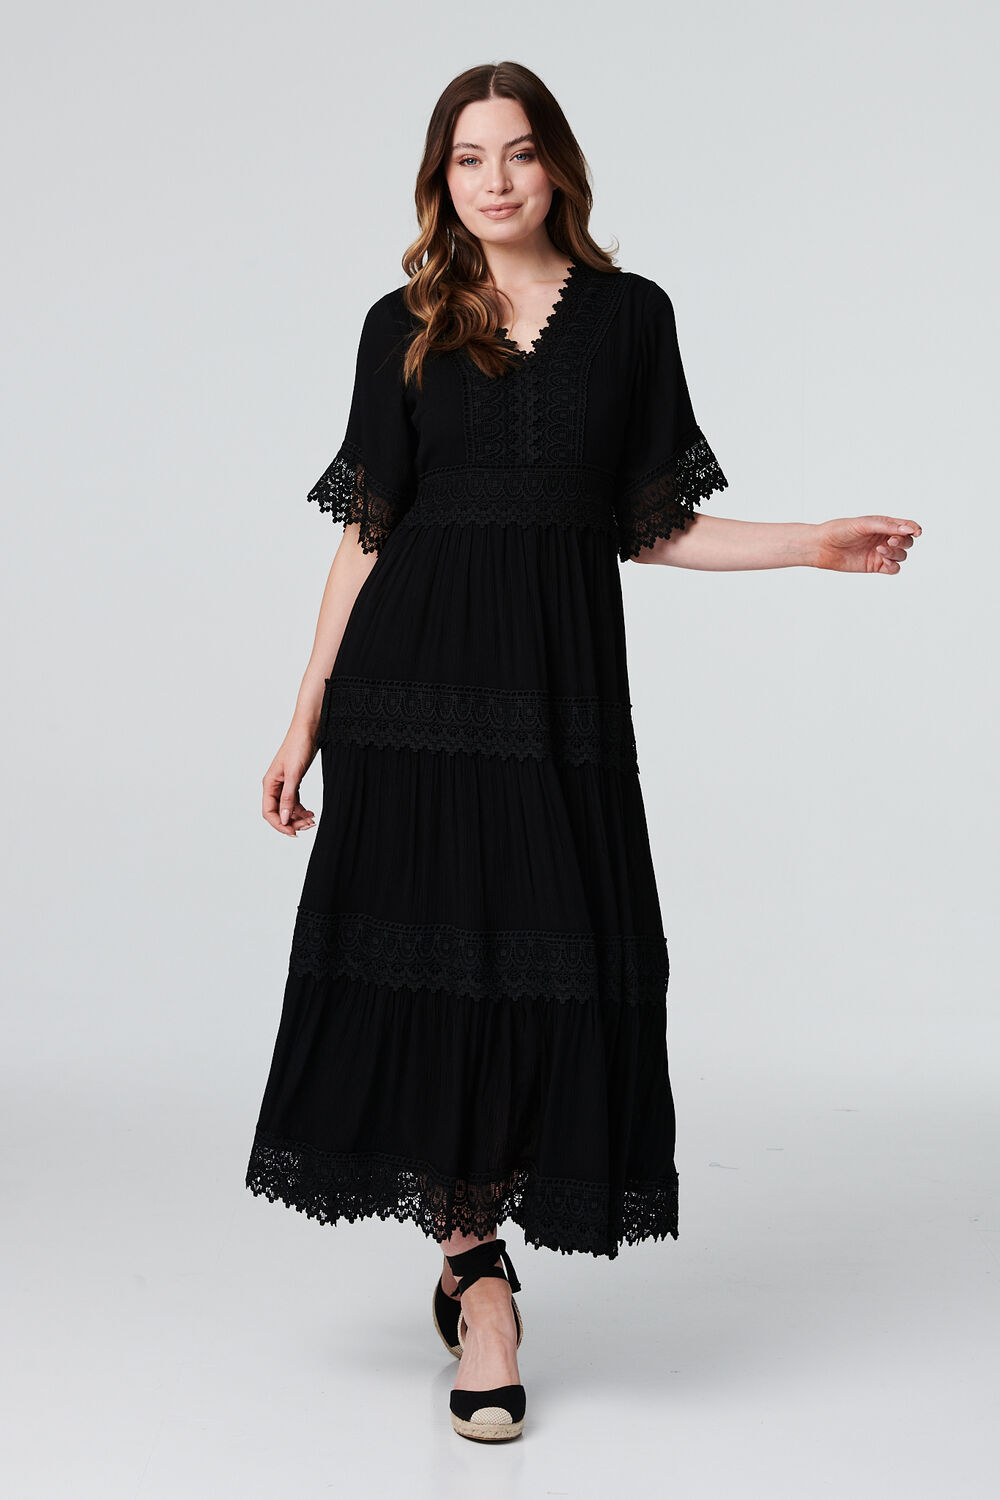 Izabel London Black - Short Sleeve Crochet Maxi Dress, Size: 18